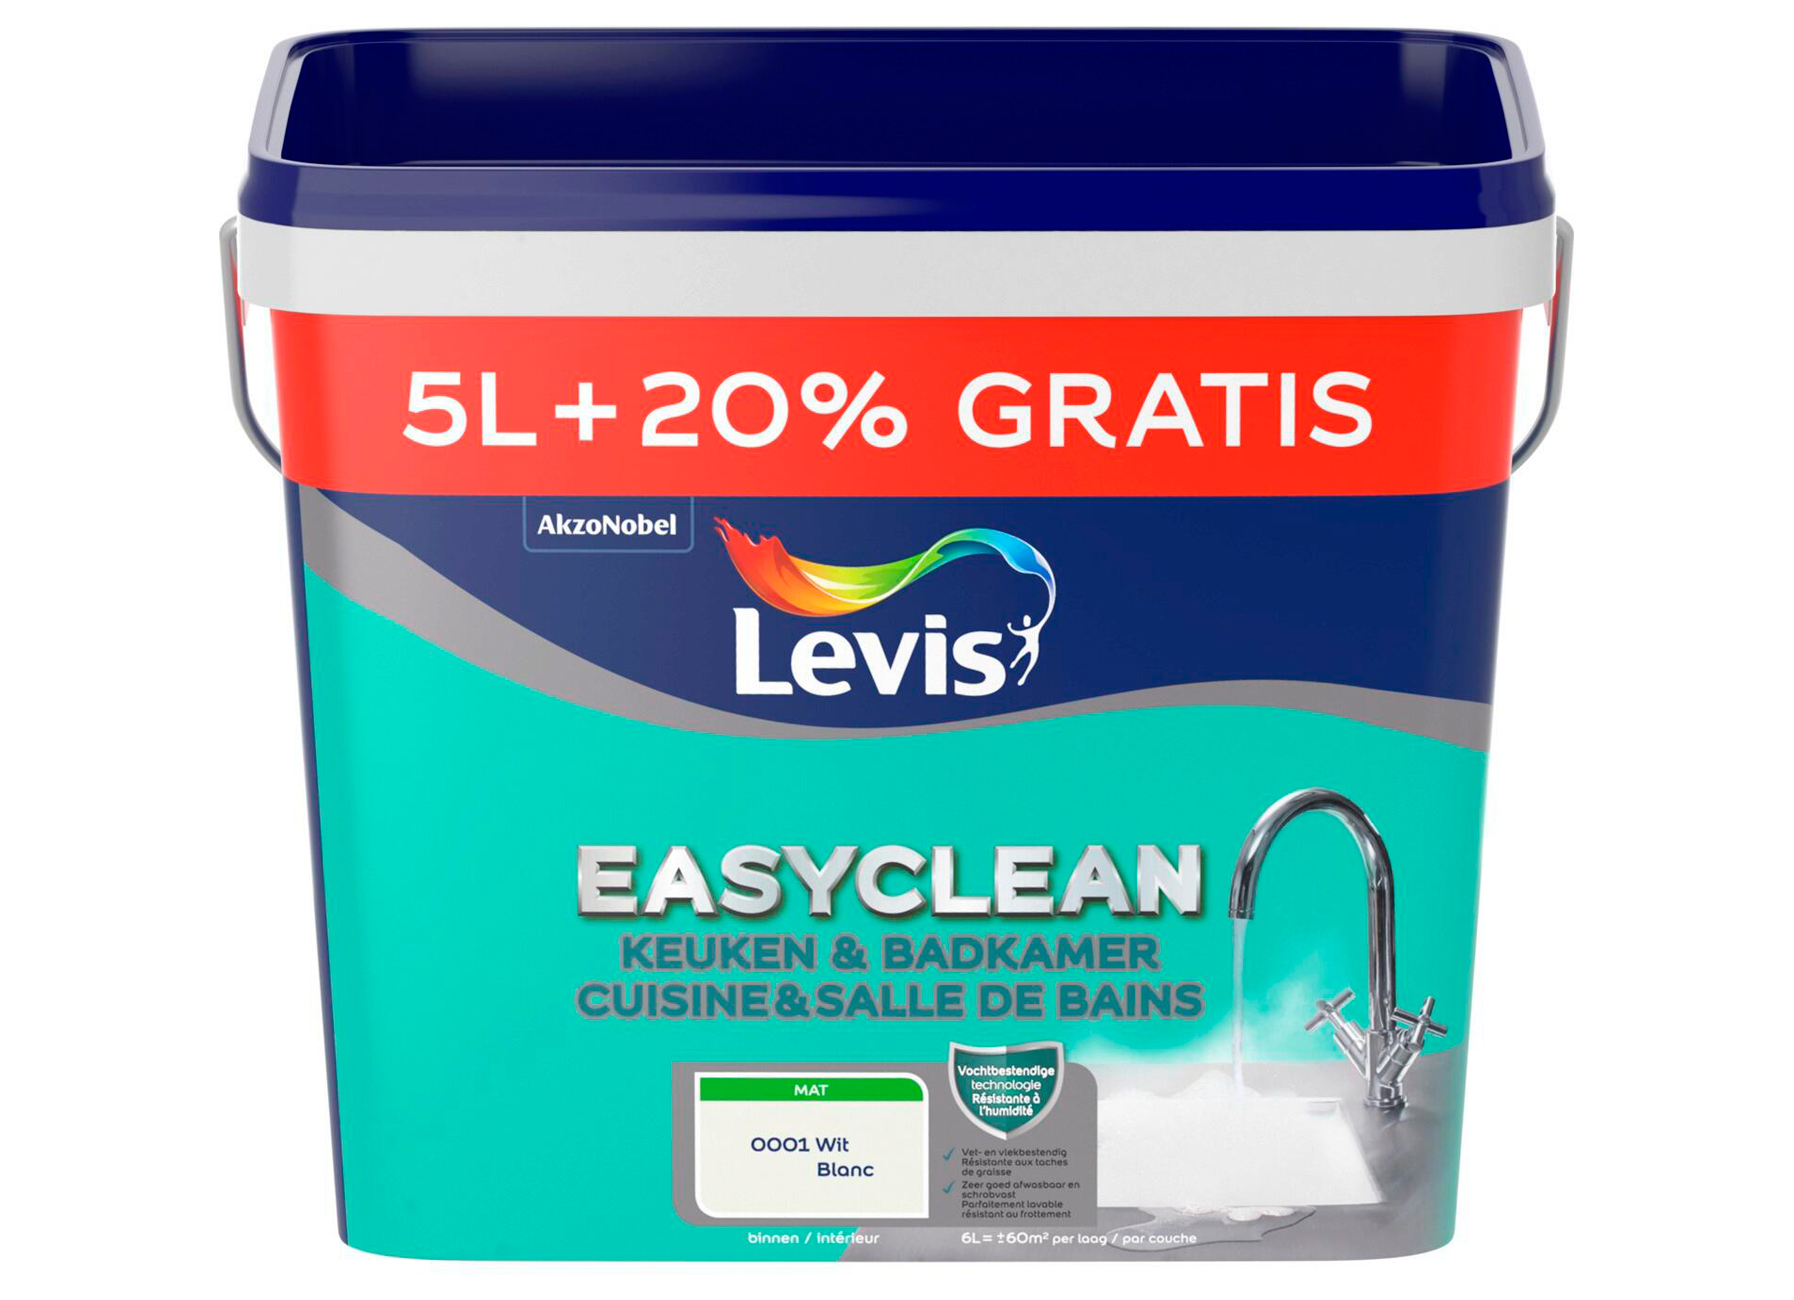 LEVIS EASYCLEAN CUISINE & SALLE DE BAINS